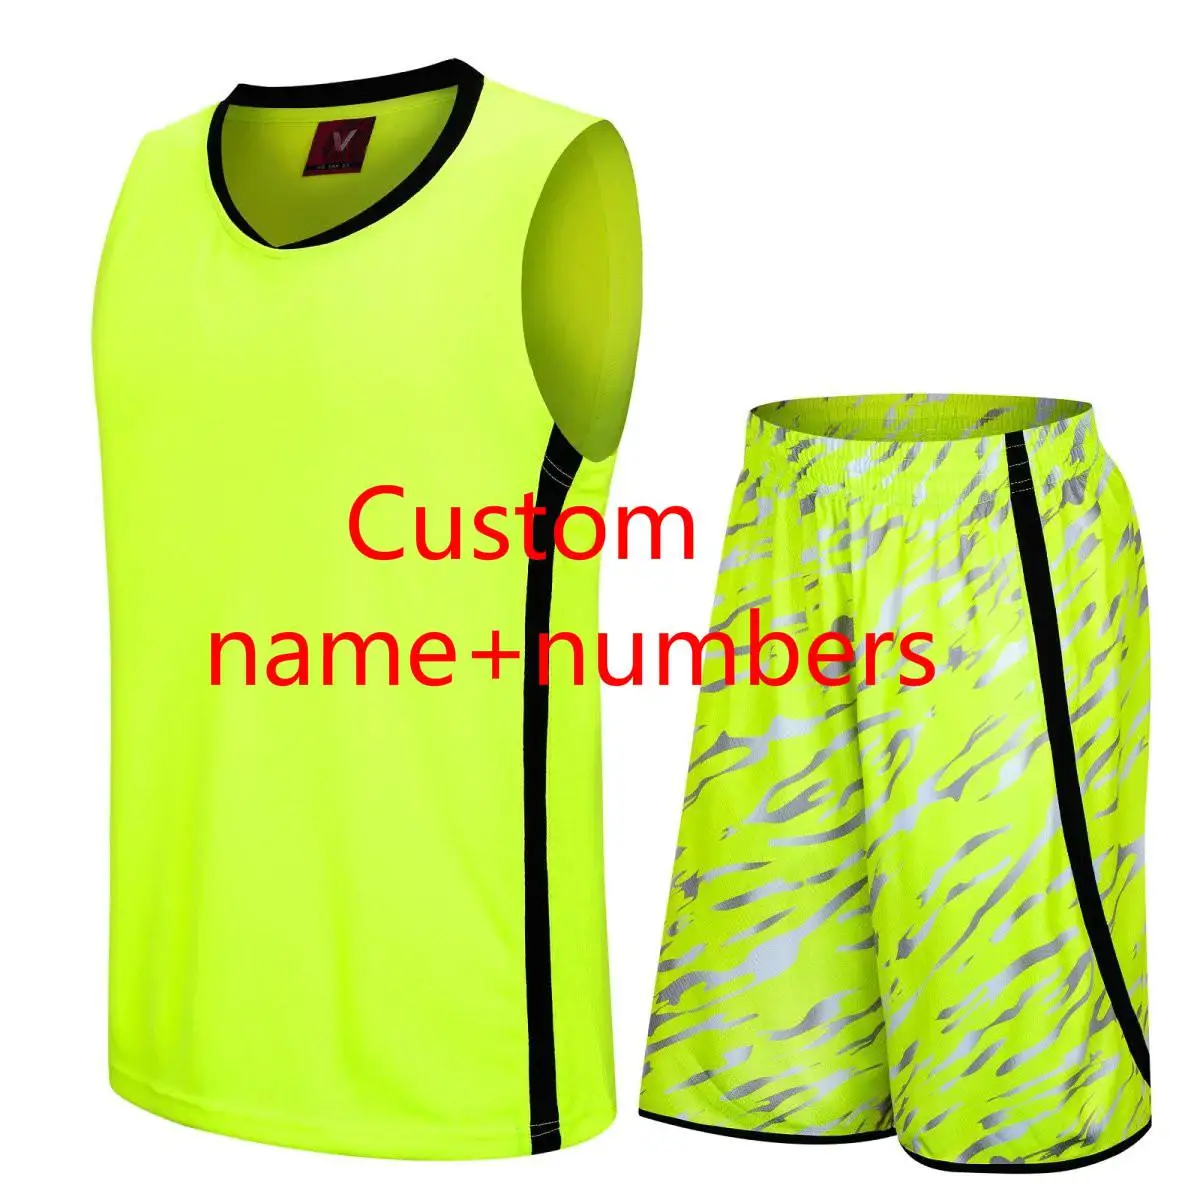 Для мужчин изготовленный на заказ дешевый Баскетбол с возвратом трикотажных комплектов фон на заказ в ретростиле с изображением Duke униформа для игры в баскетбол в колледже команда Jerseys Suit - Цвет: CT YGN